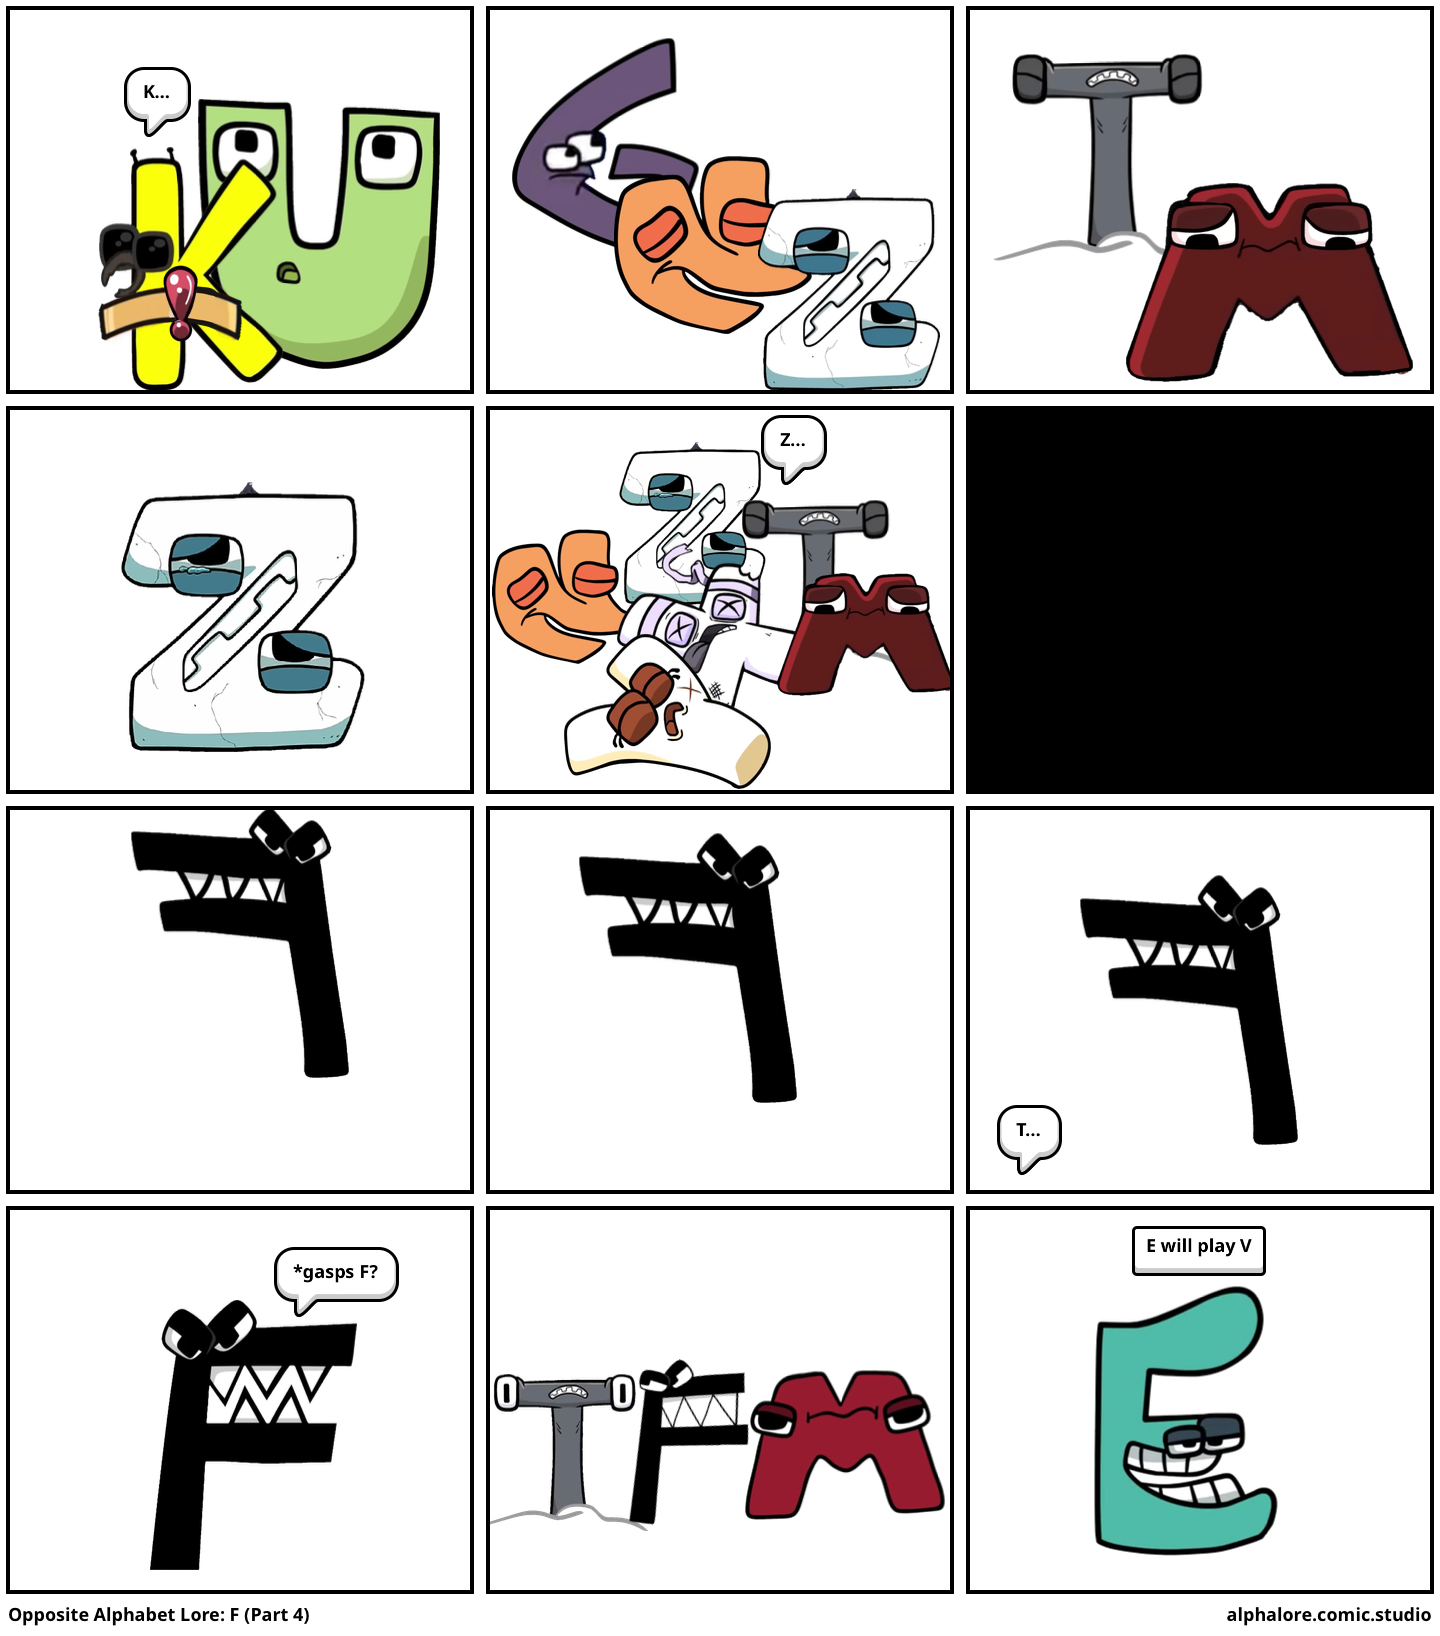 Opposite Alphabet Lore: F (Part 1) - Comic Studio